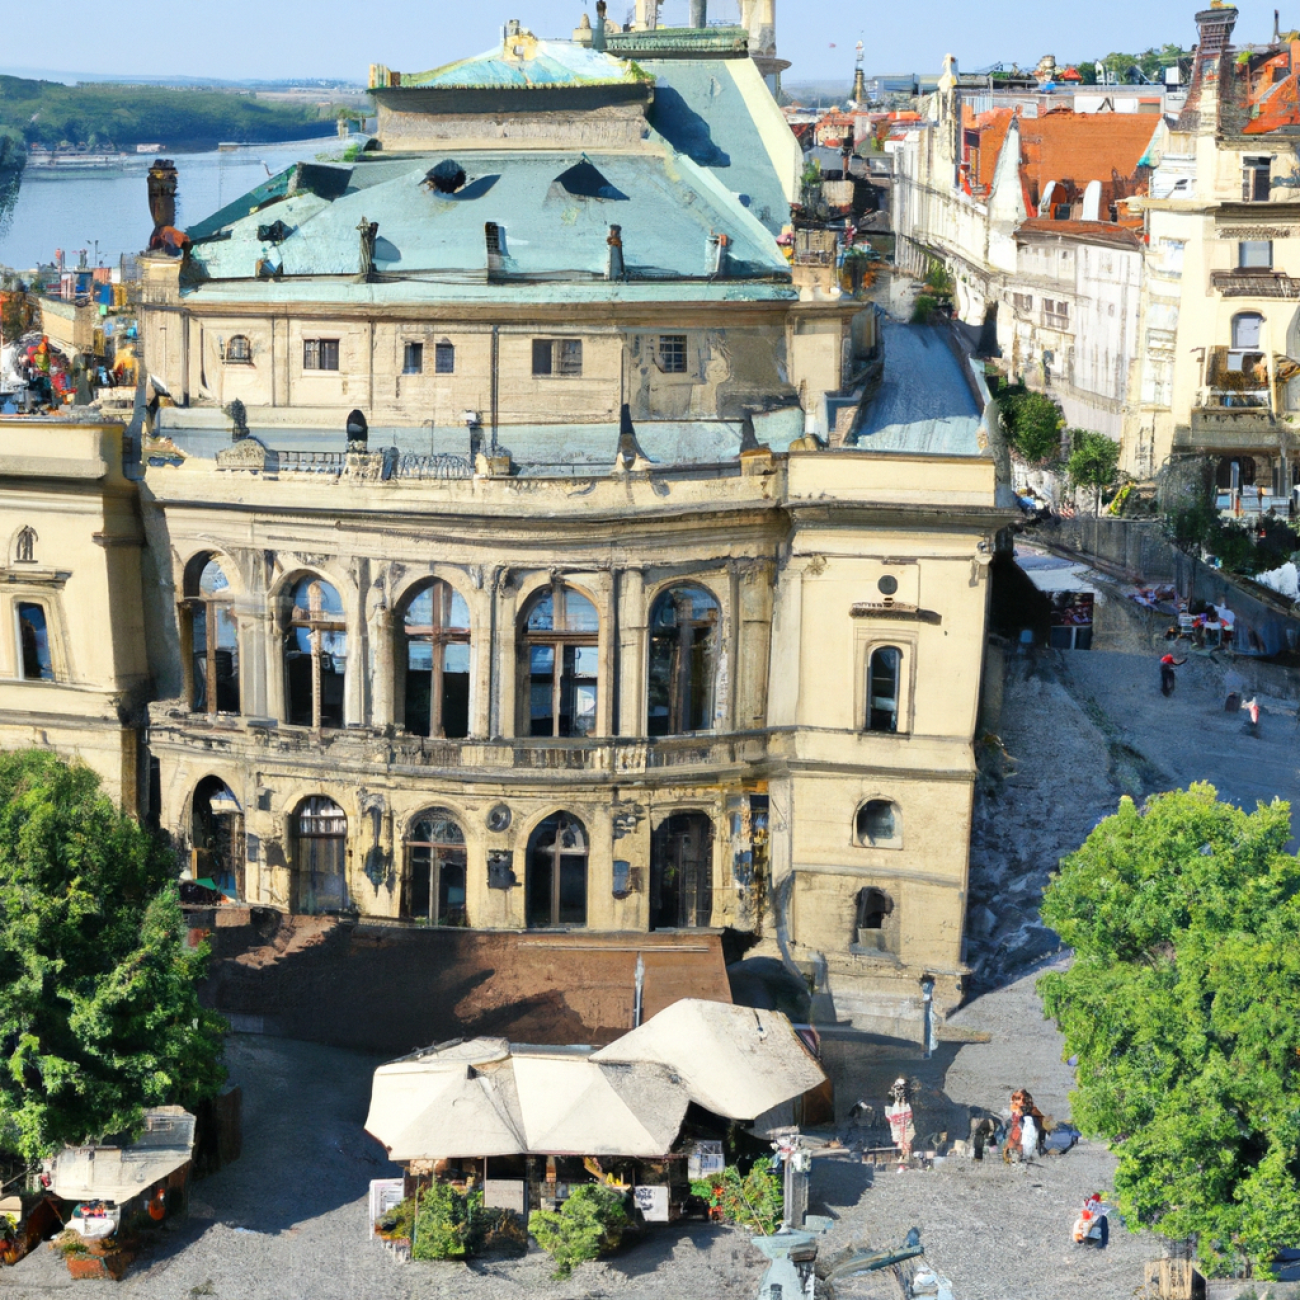 4. Café Slavia: Kultovní instituce s pozoruhodným výhledem na řeku Vltavu